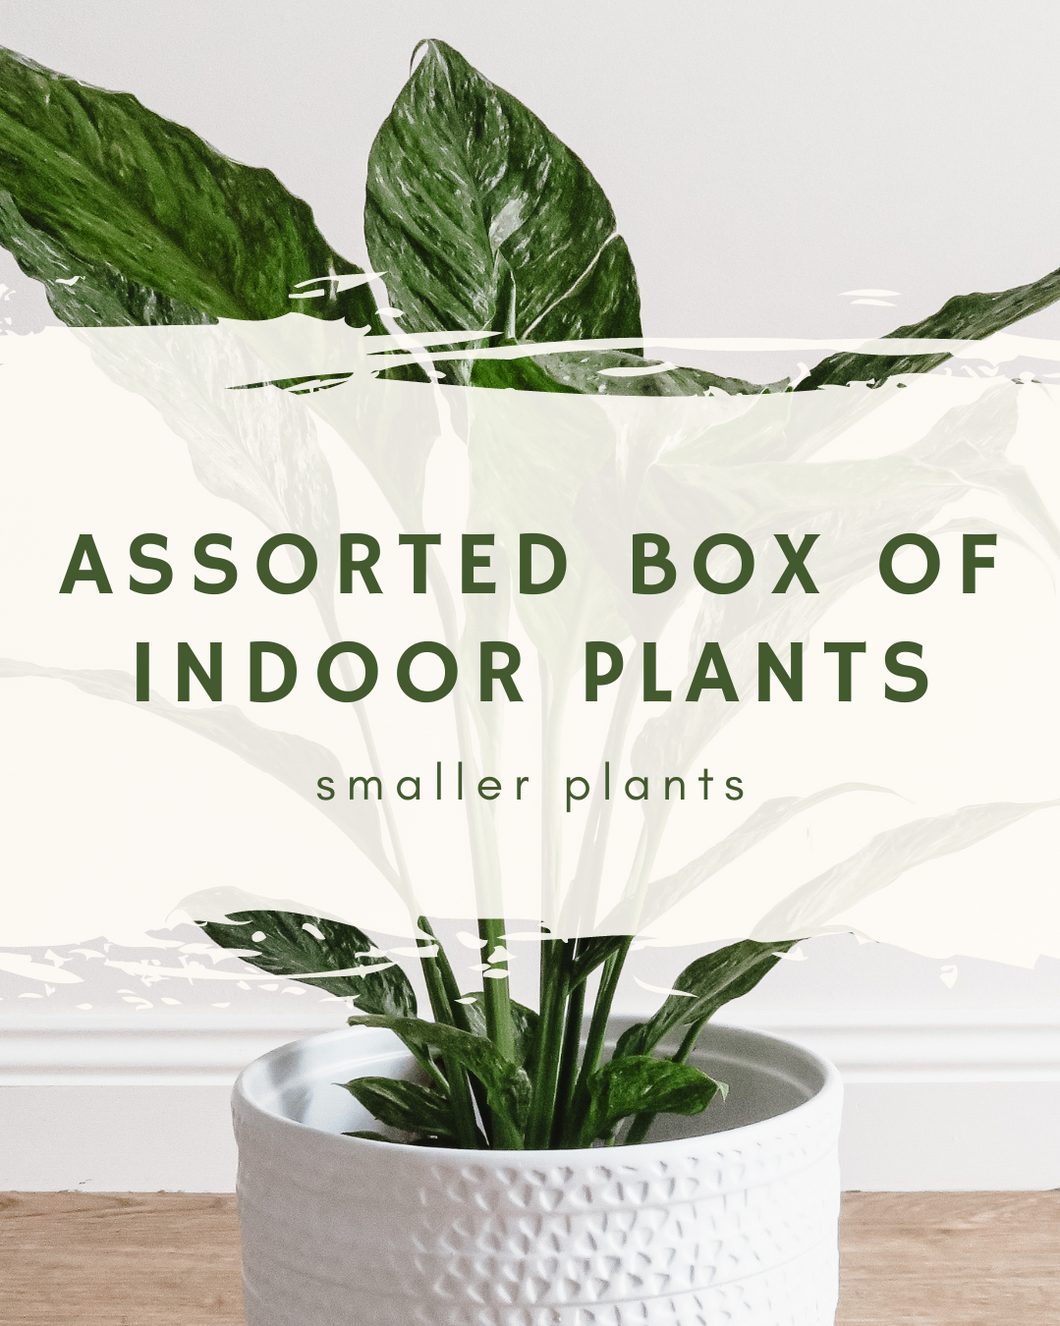 Assorted Box of Indoor Plants - smaller plants